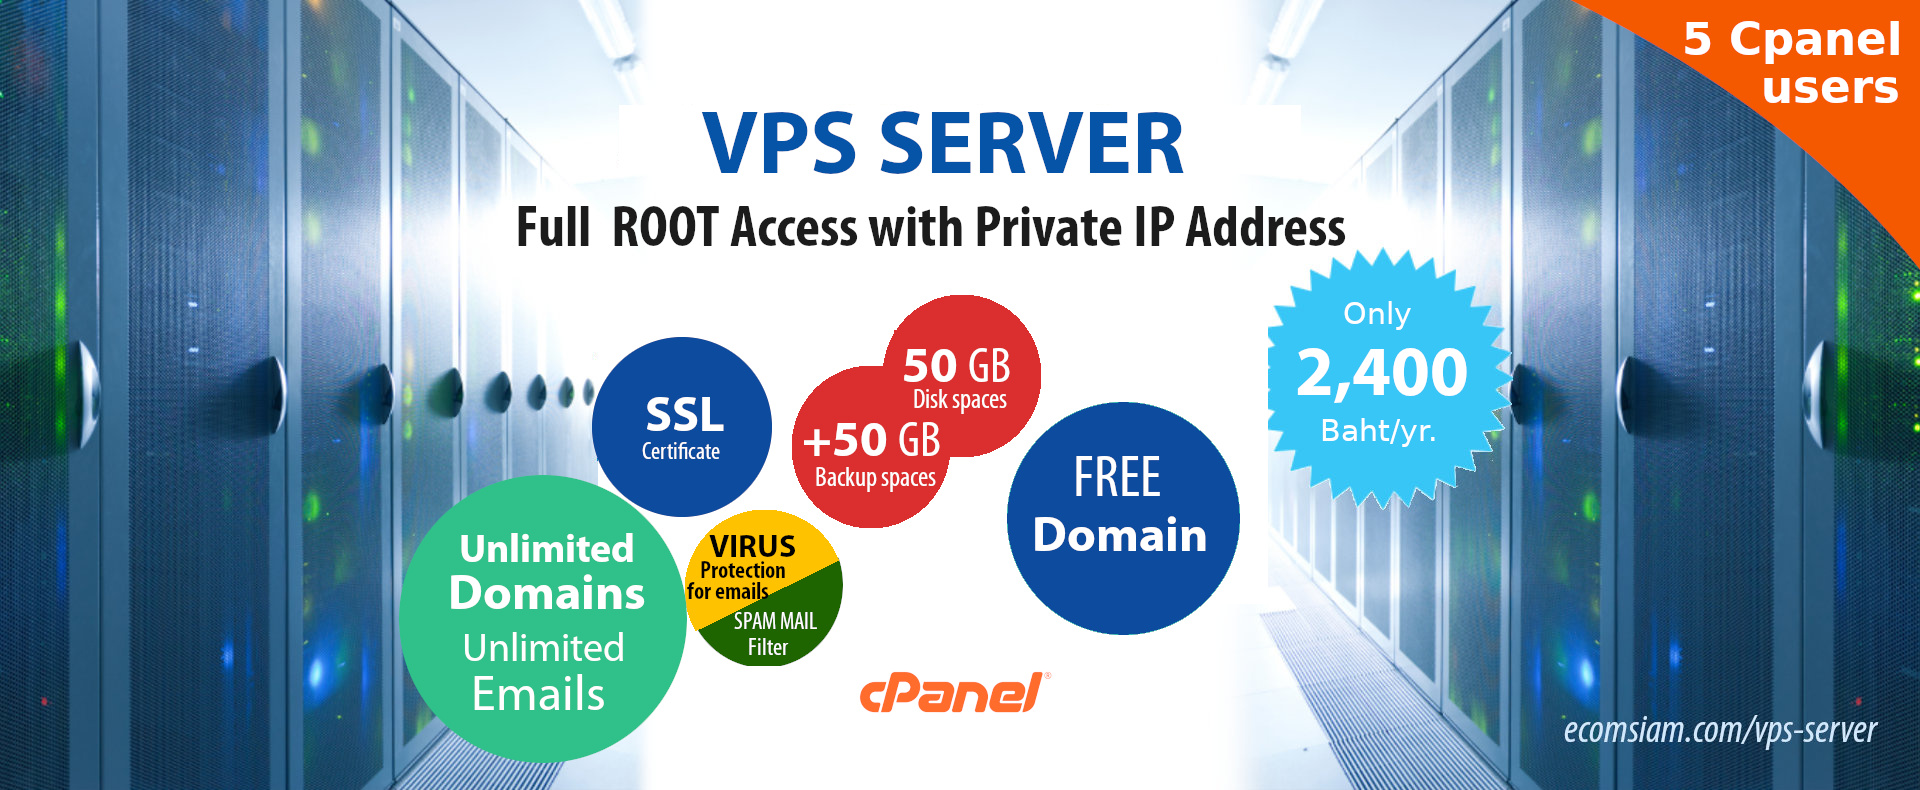 บริการ Linux VPS server ไทย VPS thailand เซิฟท์เวอร์ VPS Web Hosting thai ตั้งอยู่ในไทย vps หรือ Versual Private Server (vPS) เซิร์ฟเวอร์ส่วนตัวเสมือนจริง ระบบควบคุมจัดการ Web hosting ที่ง่าย สะดวกด้วย cPanel WHM Control Panel,PRIVATE Name Servers,FULL Root Access สามารถเข้าใช้งานโดยใช้สิทธิ Root VPS server ไม่จำกัดโดเมน,ไม่จำกัดอีเมล์,ฟรี โดเมนเนม